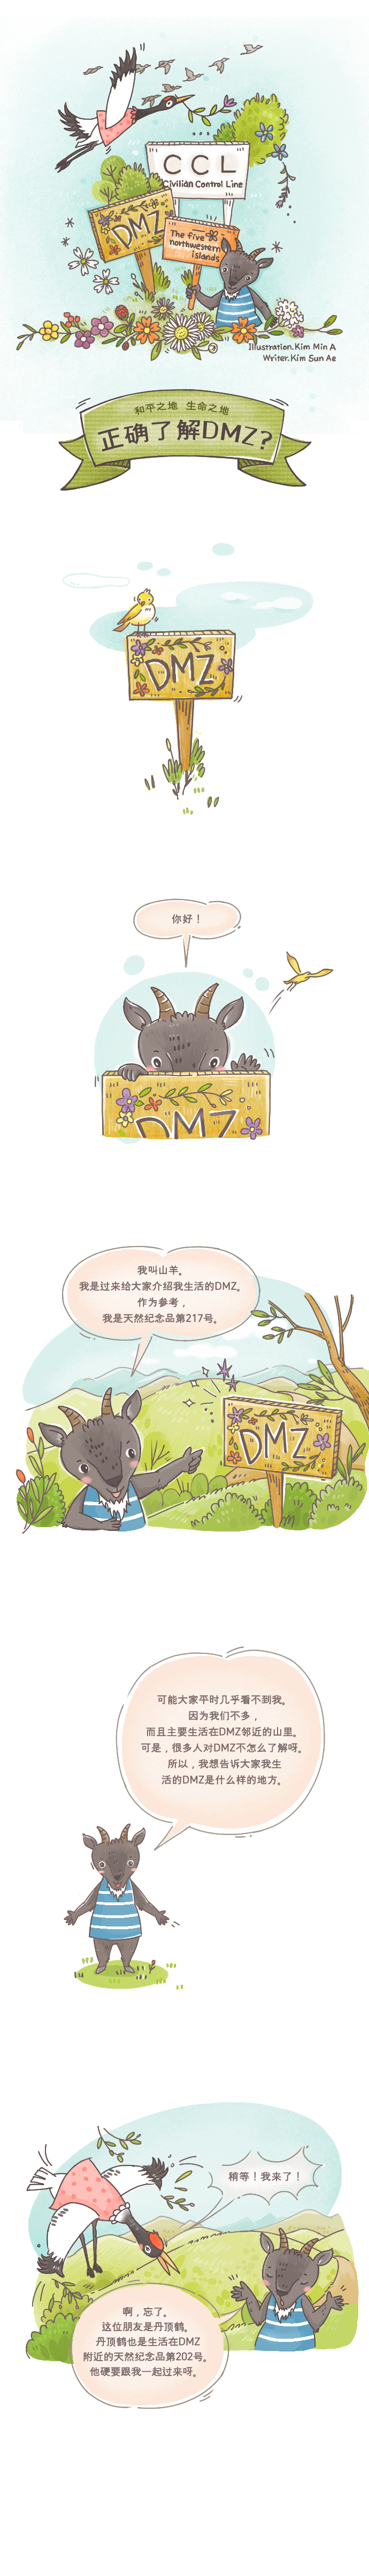 DMZ Cartoon01